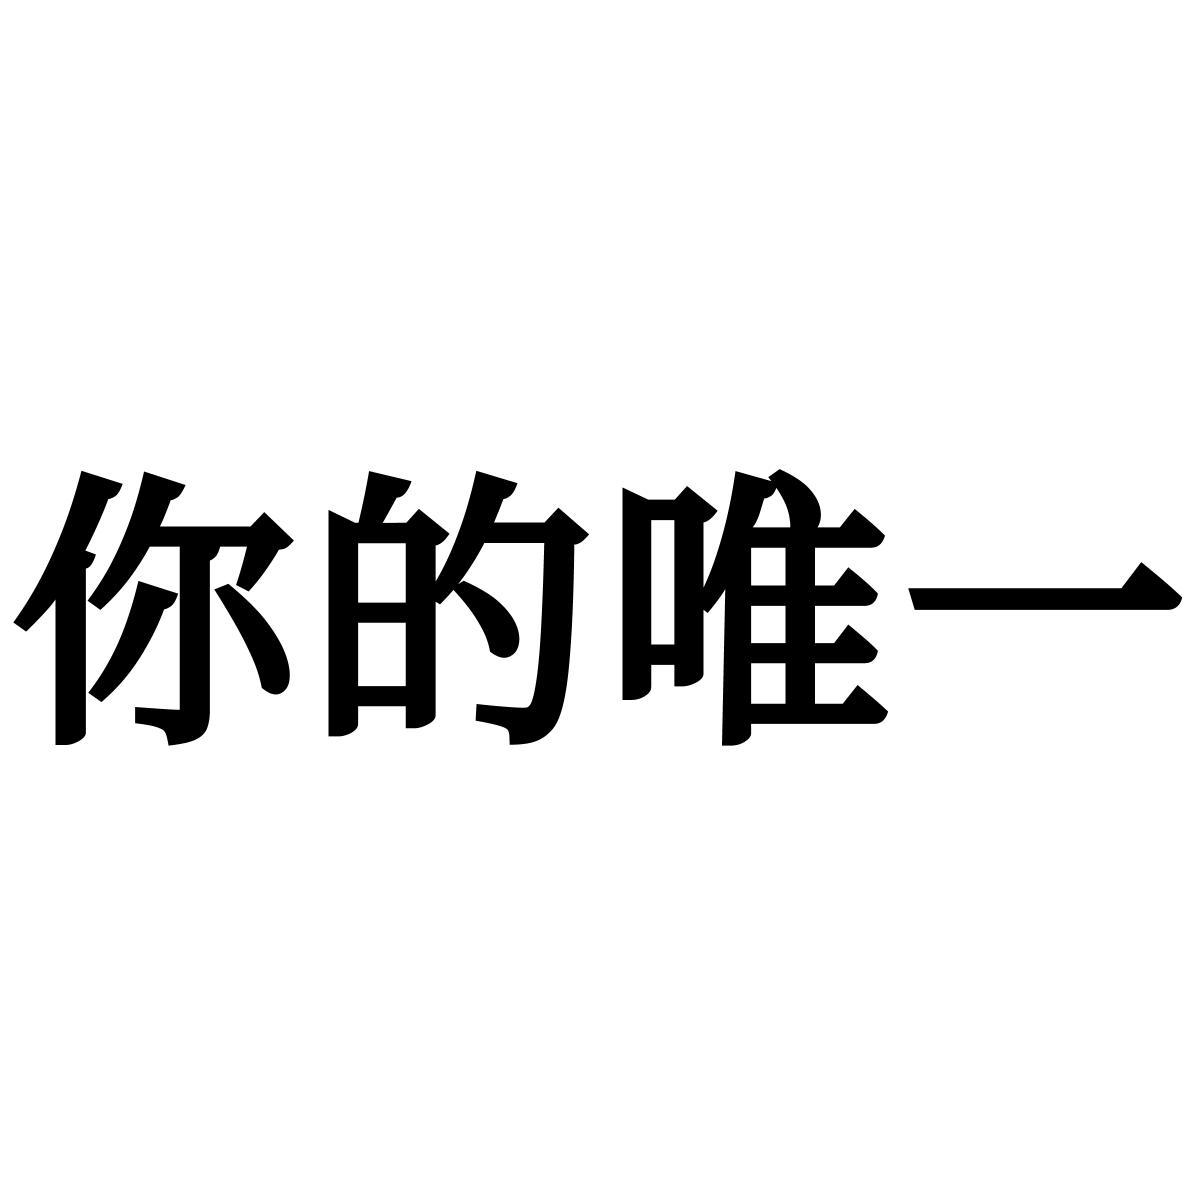 商标文字你的唯一商标注册号 59959990,商标申请人北京关键时刻文化